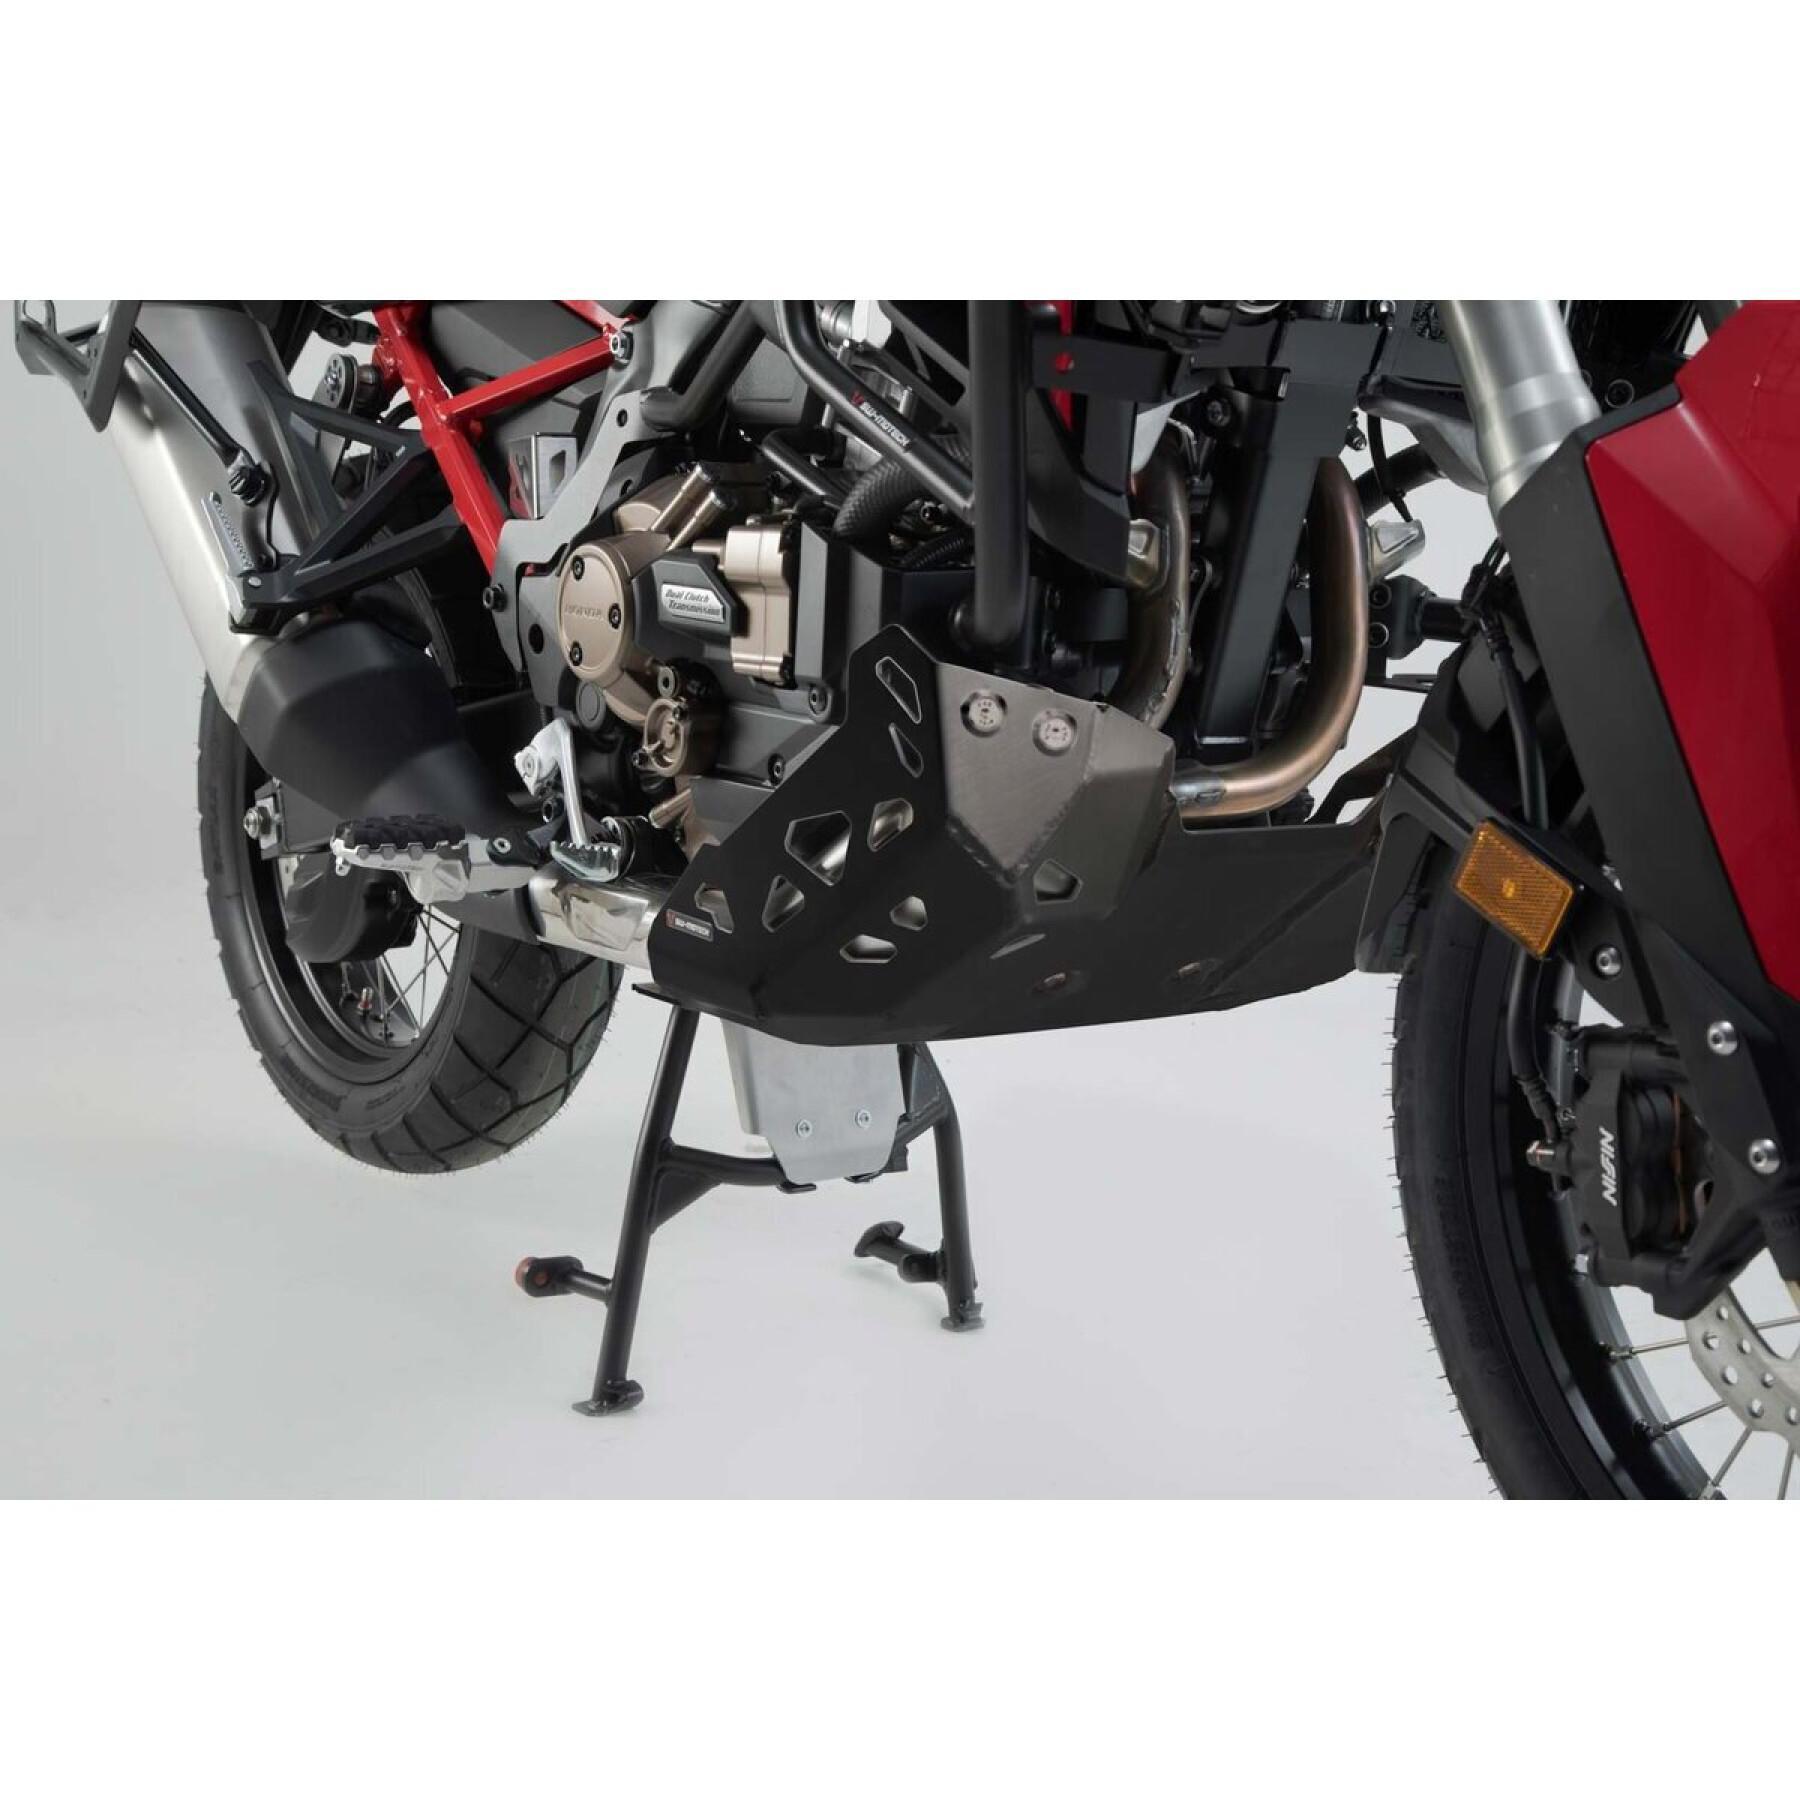 Sabot moteur avec SBL SW-Motech Honda CRF1100L/Adv Sports (19-)